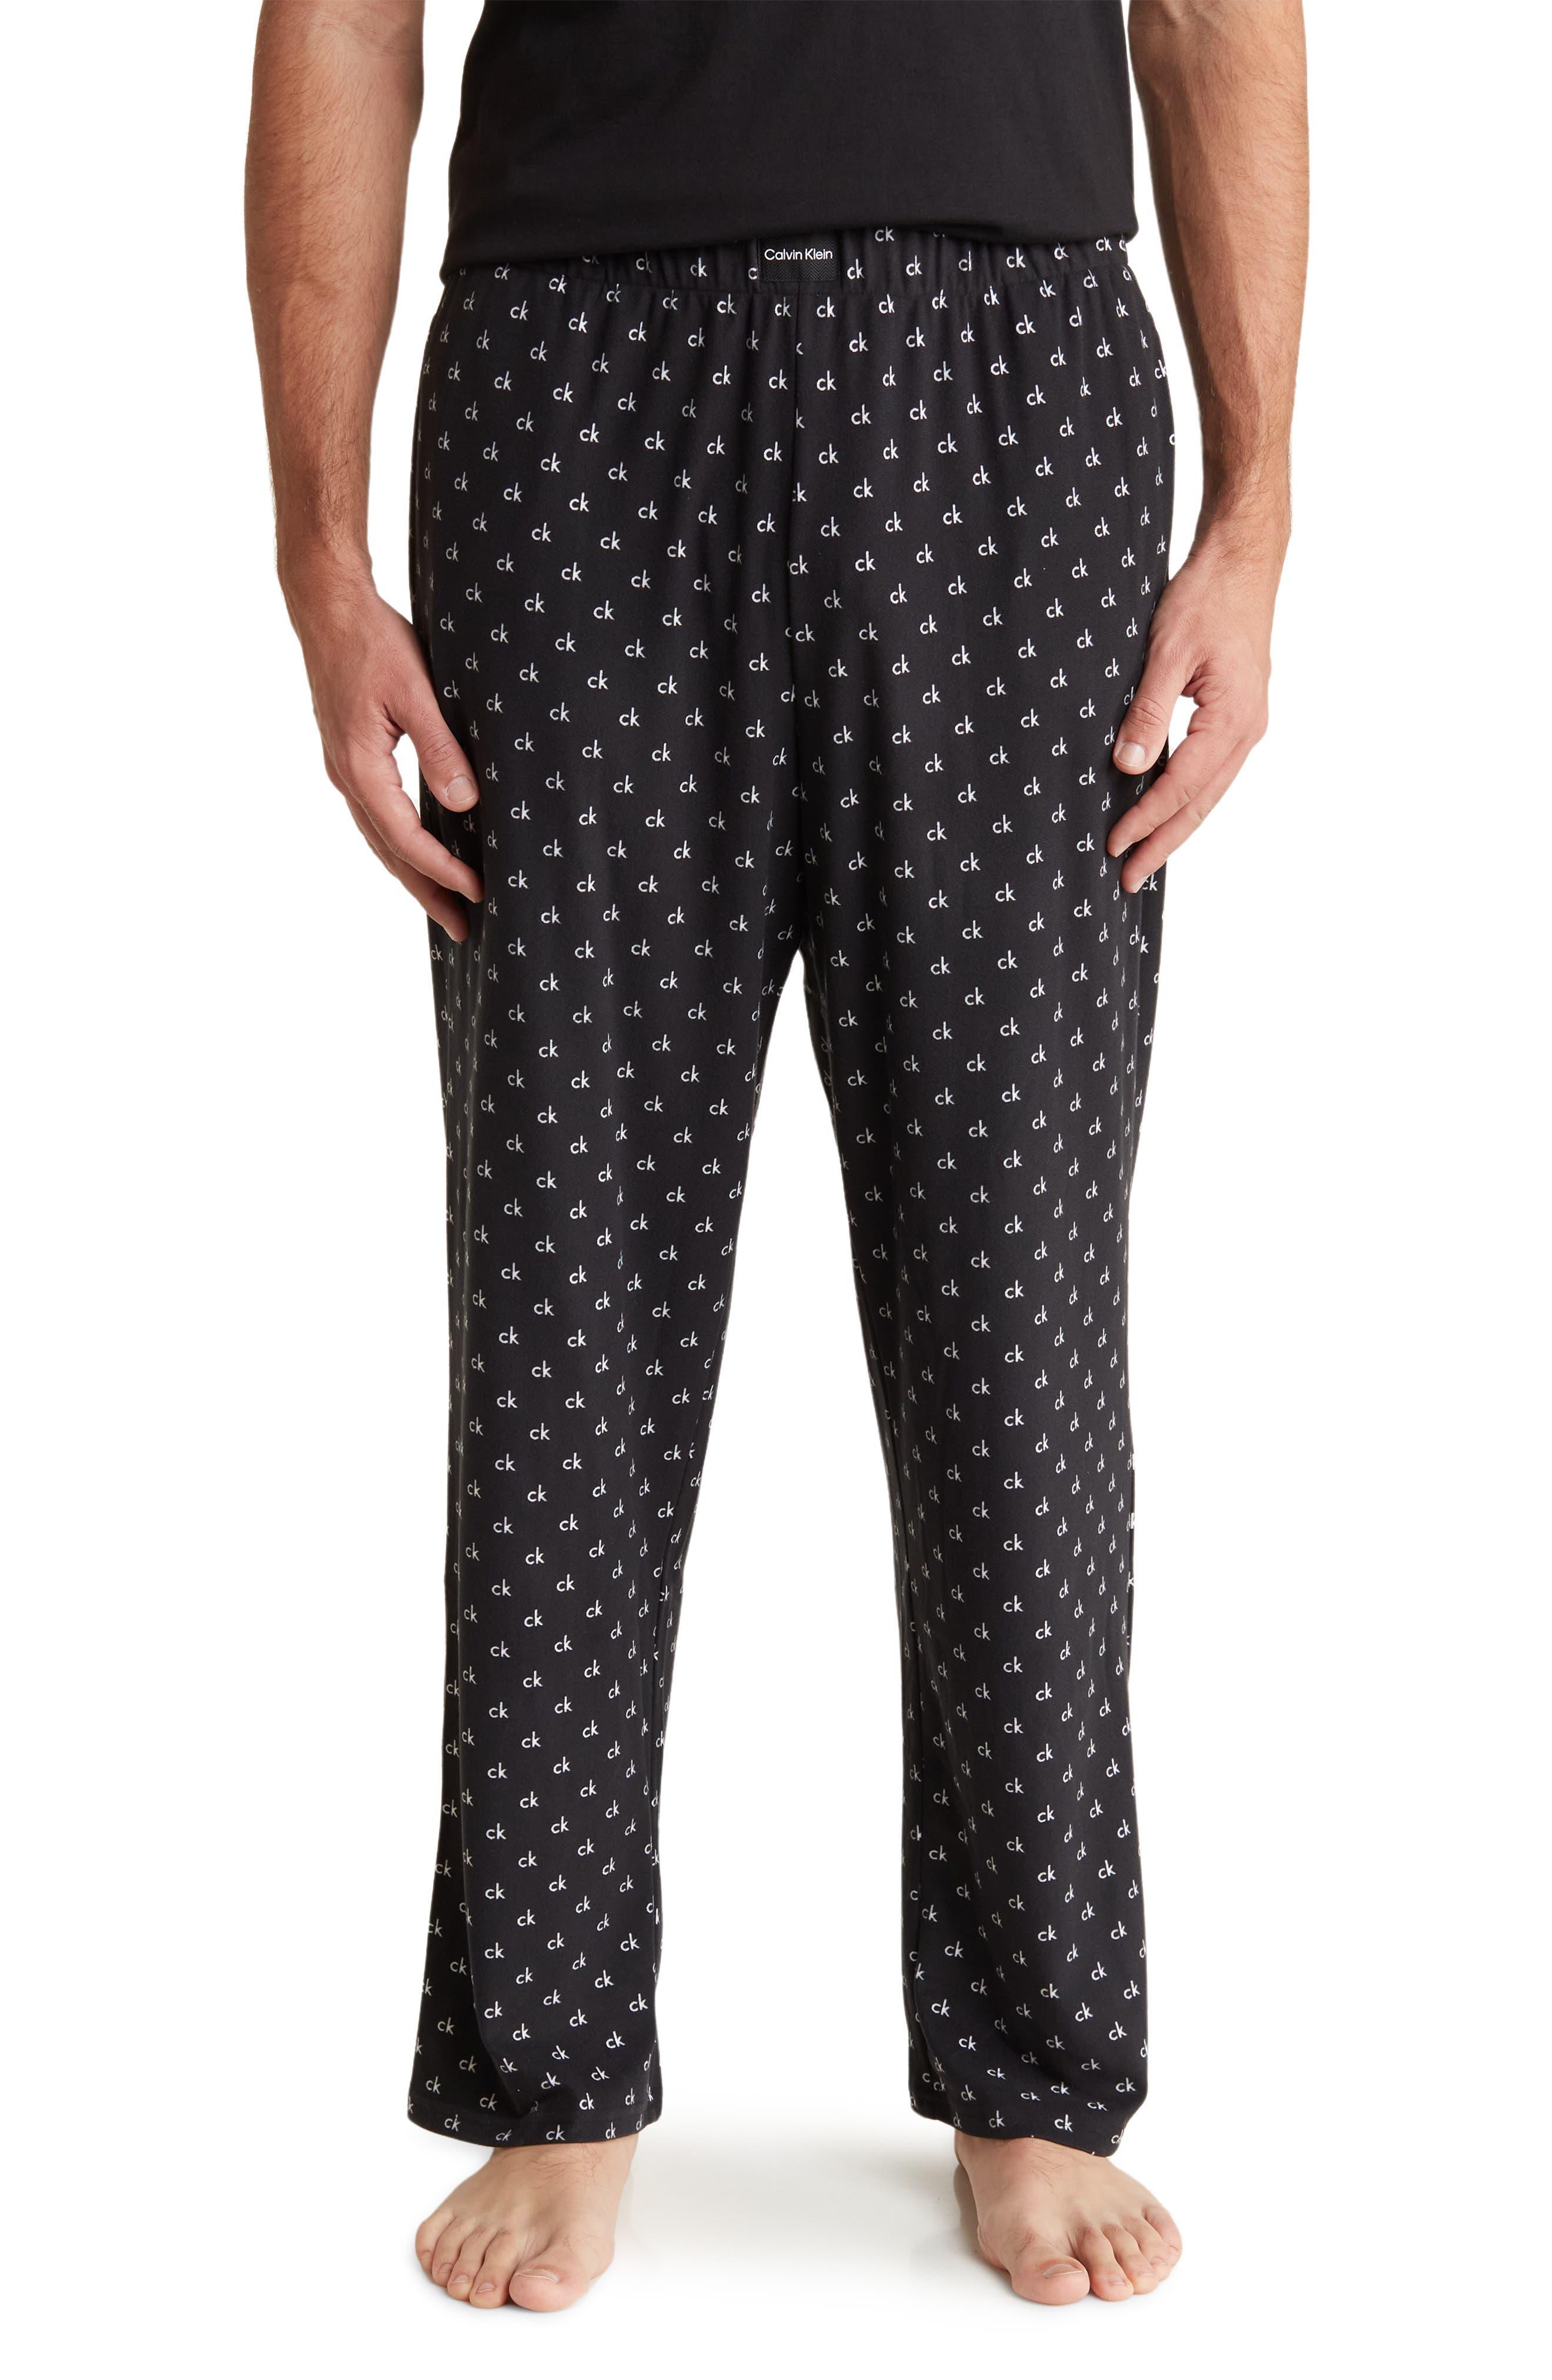 Calvin Klein Pajama leggings in black